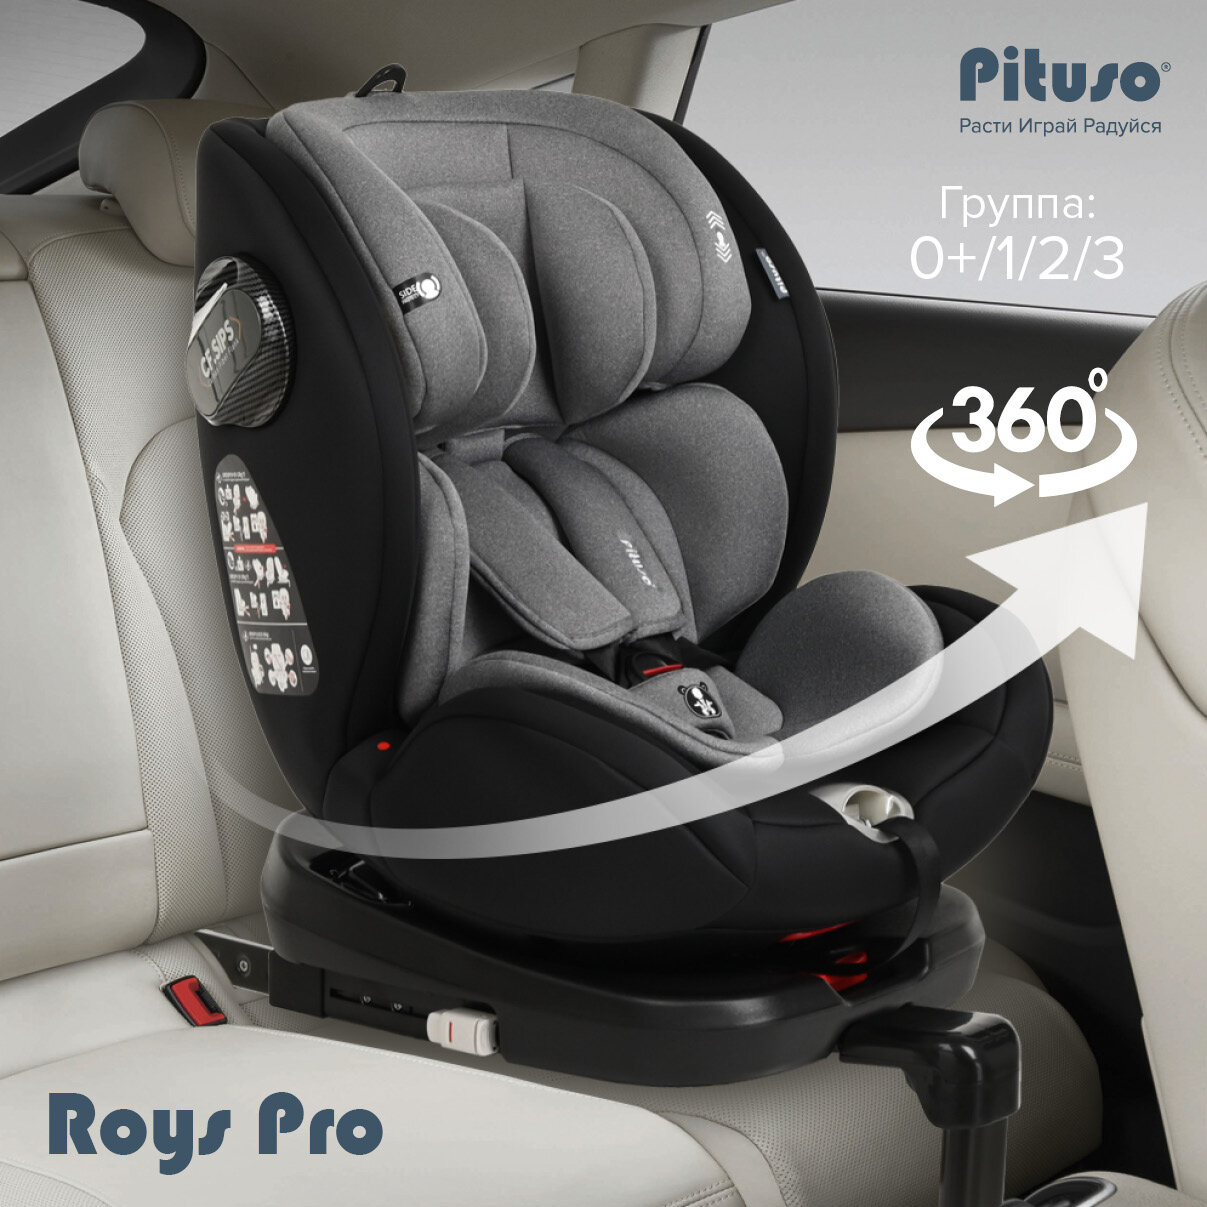 Автокресло Pituso Roys Pro для детей группы 0+/1/2/3 0-36 кг Grey/Серый